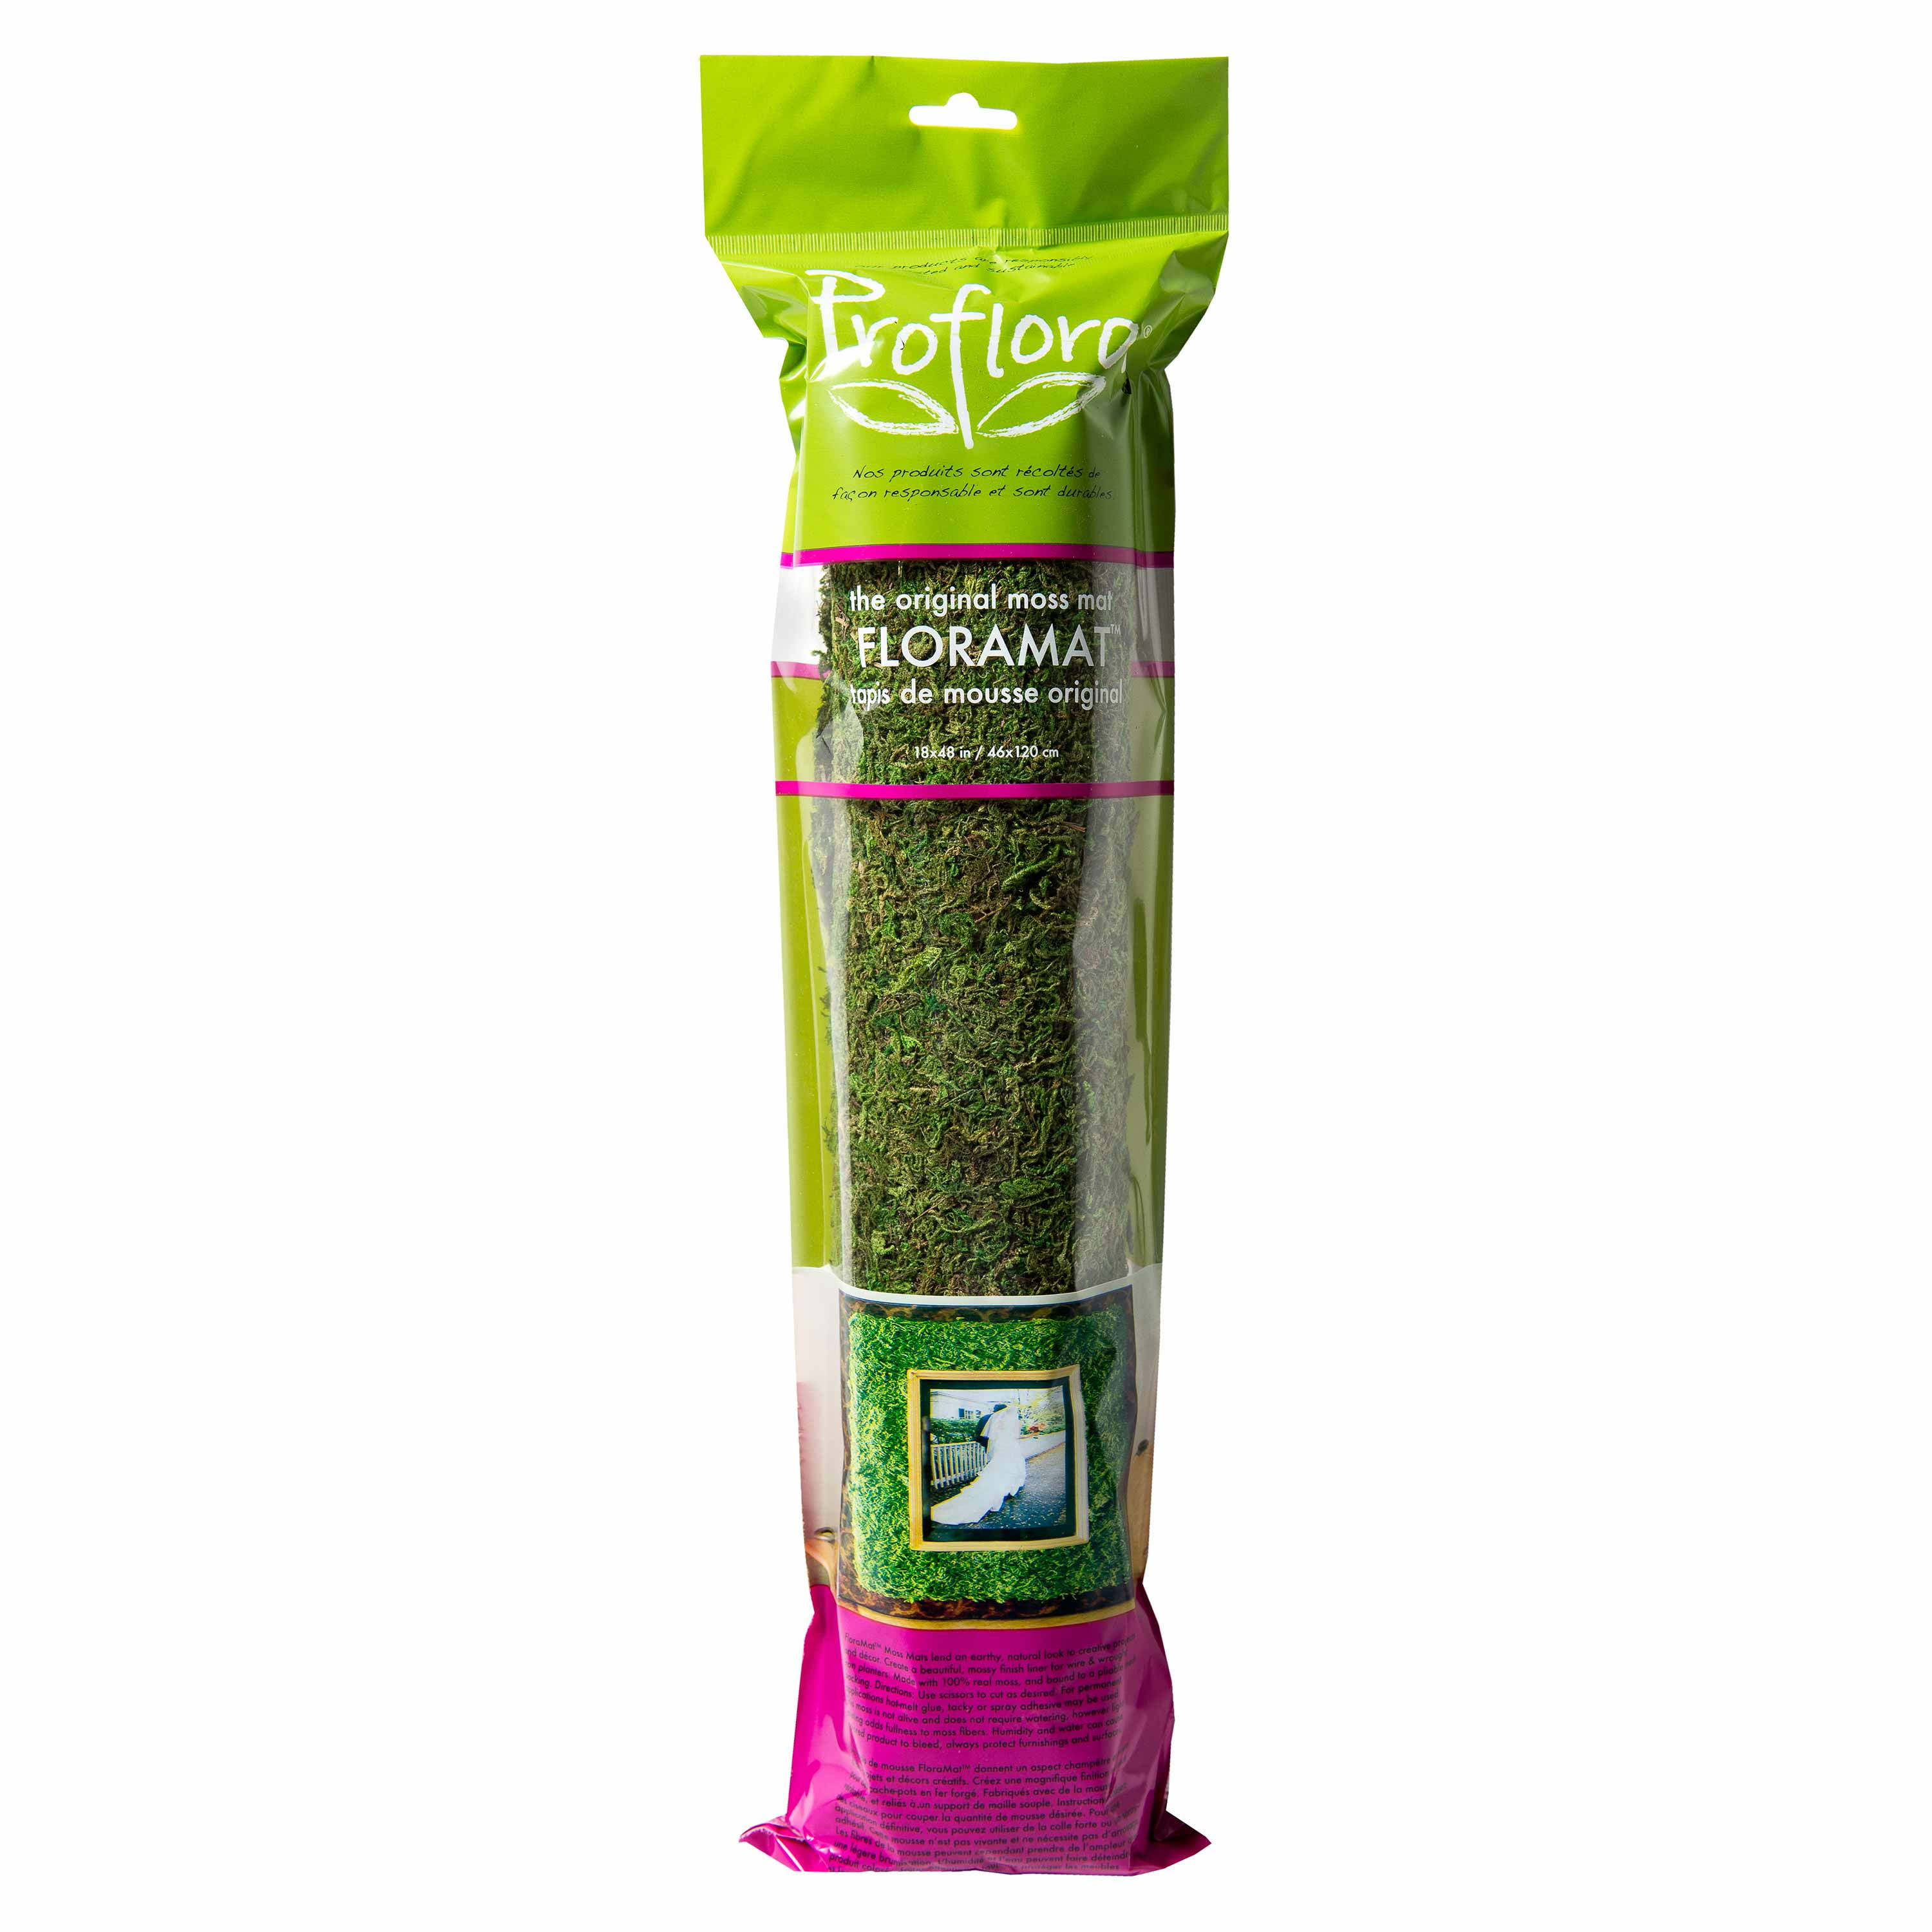 Green Floramat, 48” Turf Mat, True Artificial x Moss Proflora 18”